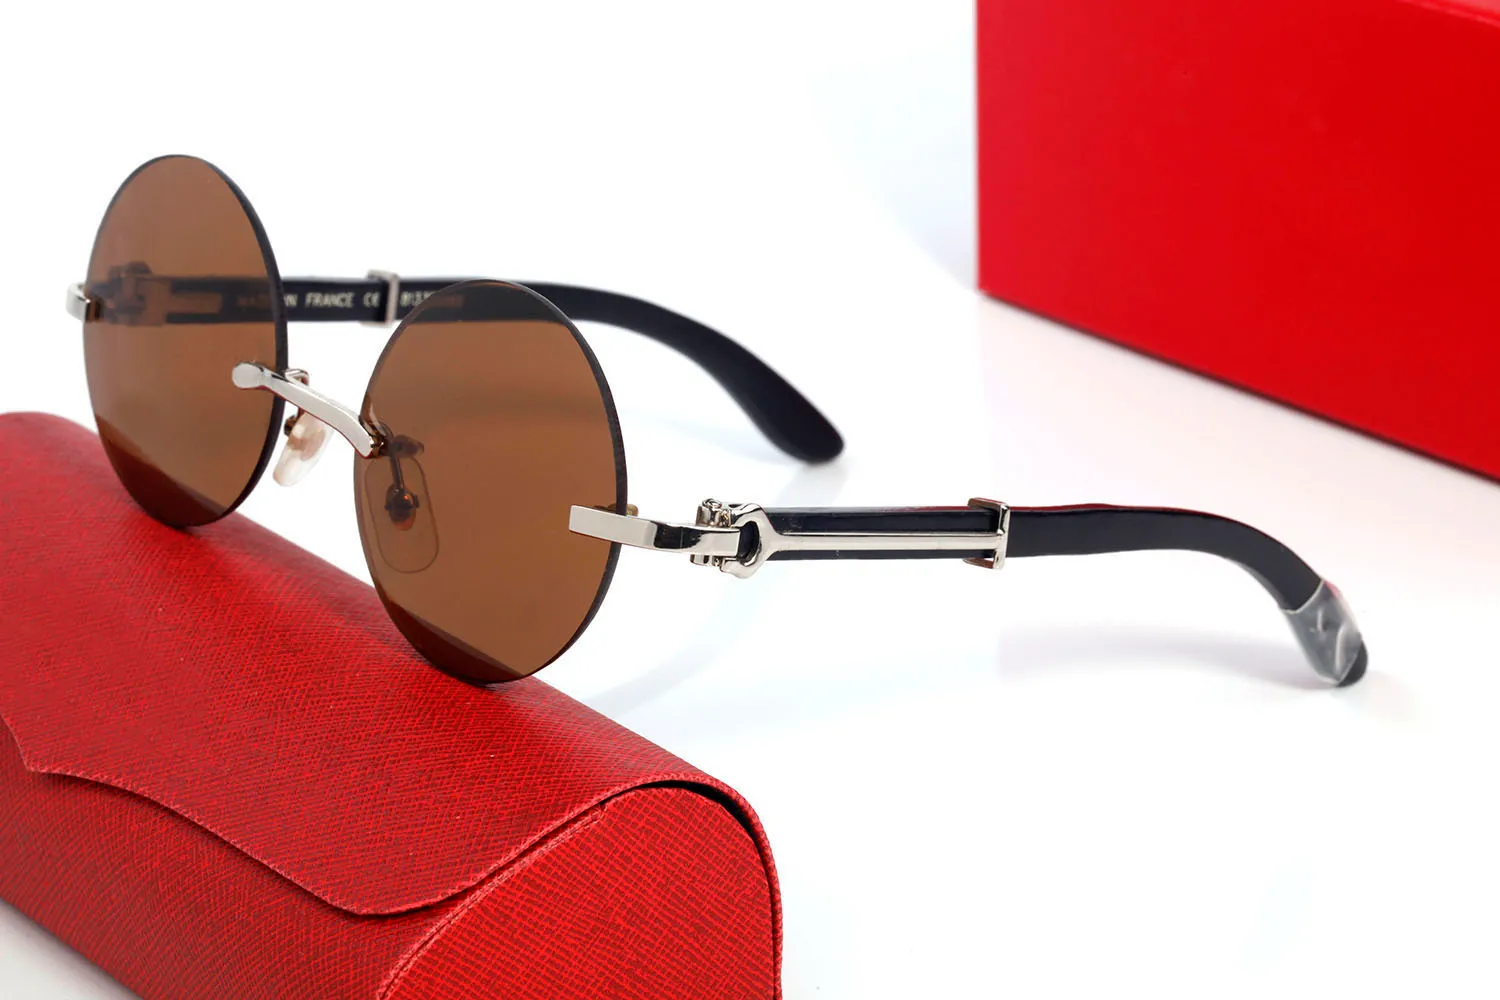 occhiali rotondi da uomo lenti trasparenti occhiali da sole sportivi da uomo moda donna corno di bufalo occhiali da vista in legno senza montatura completi con custodia lunett2762